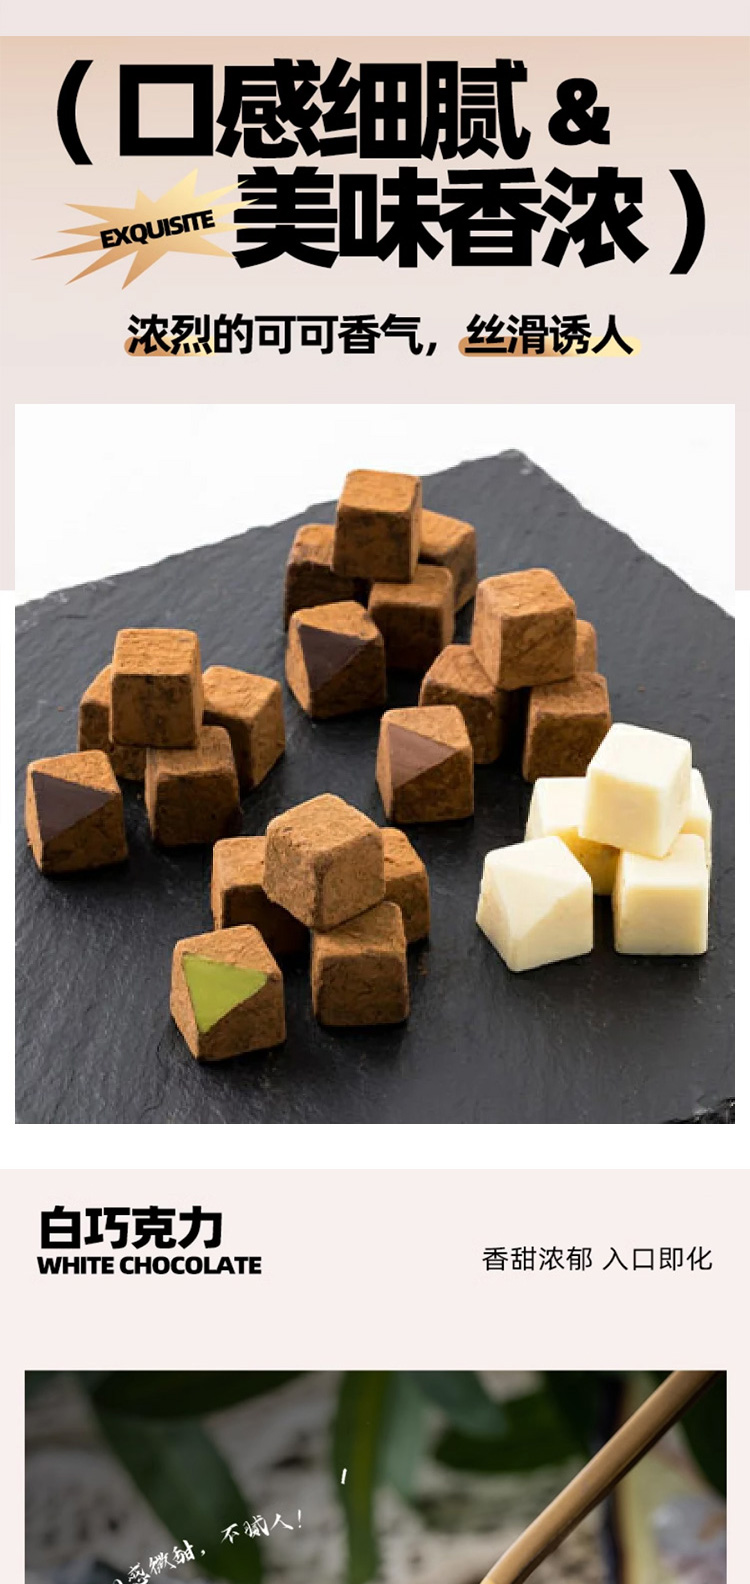 【日本直邮】日本TAKAOKA高冈 小红书推荐 高岗巧克力 生巧克力 草莓味生巧克力 140g